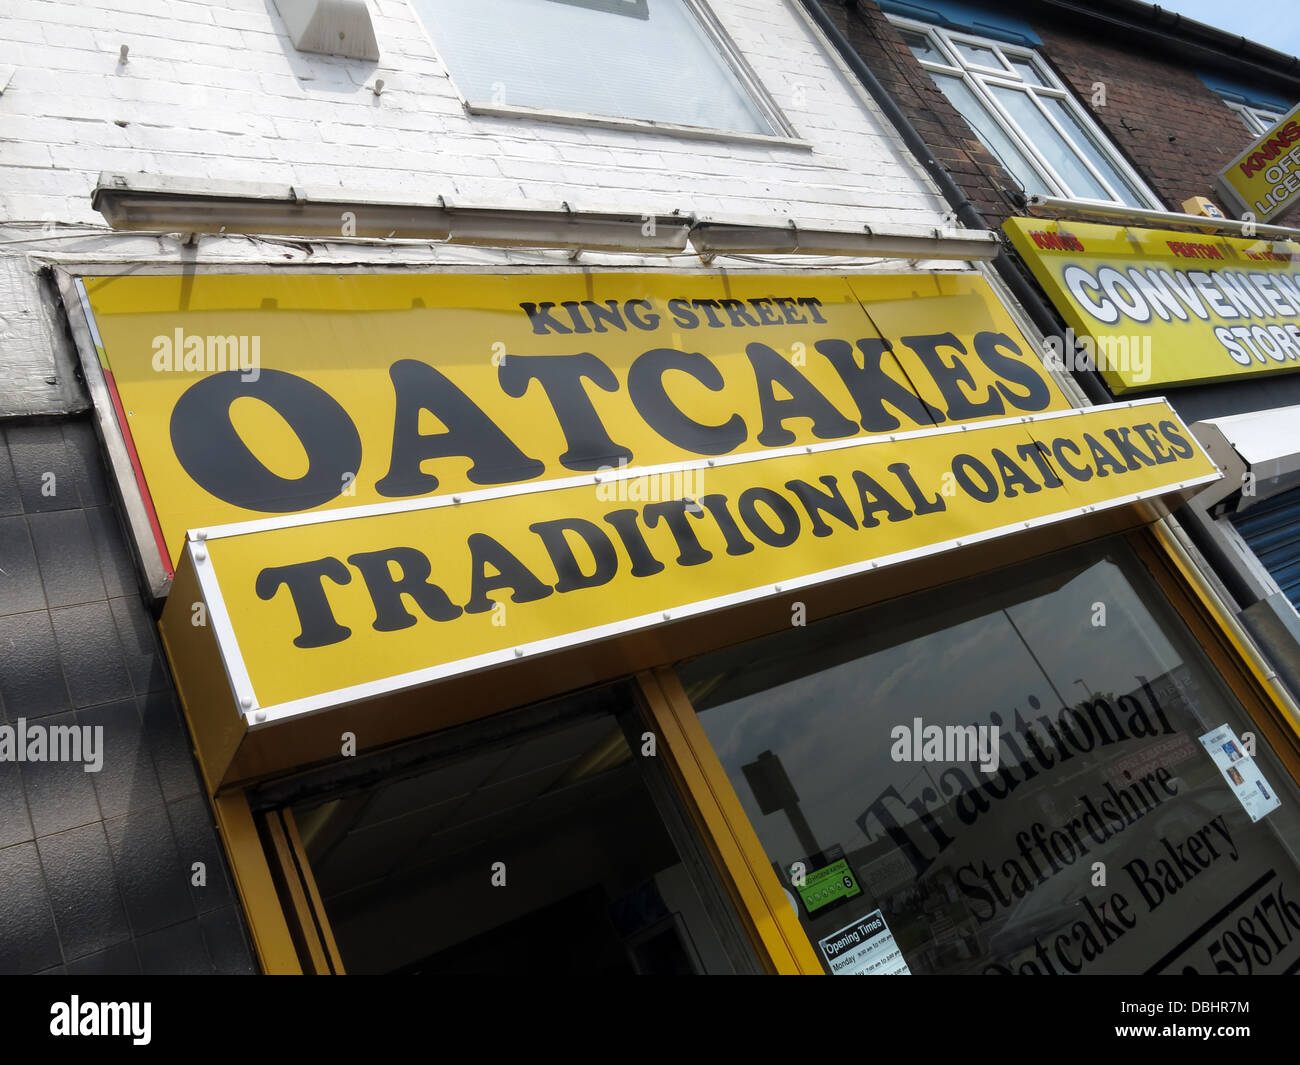 De l'extérieur d'un Staffordshire Stoke traditionnel / Oatcake shop, avec façade jaune vif. Banque D'Images